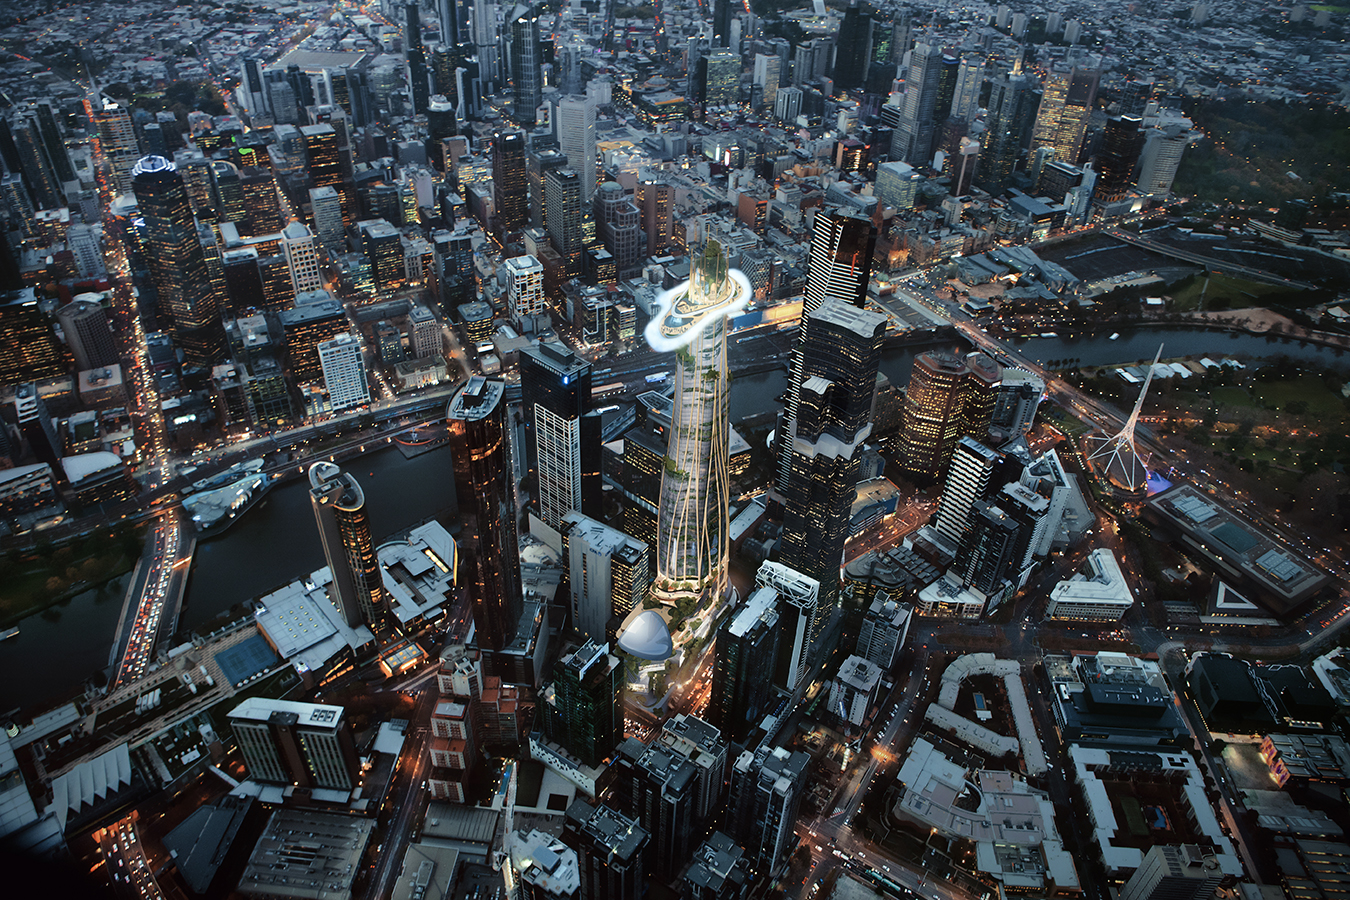 La propuesta de MAD Architects crea un icono distintivo en el skyline urbano que reconecta a los ciudadanos con la Naturaleza.
